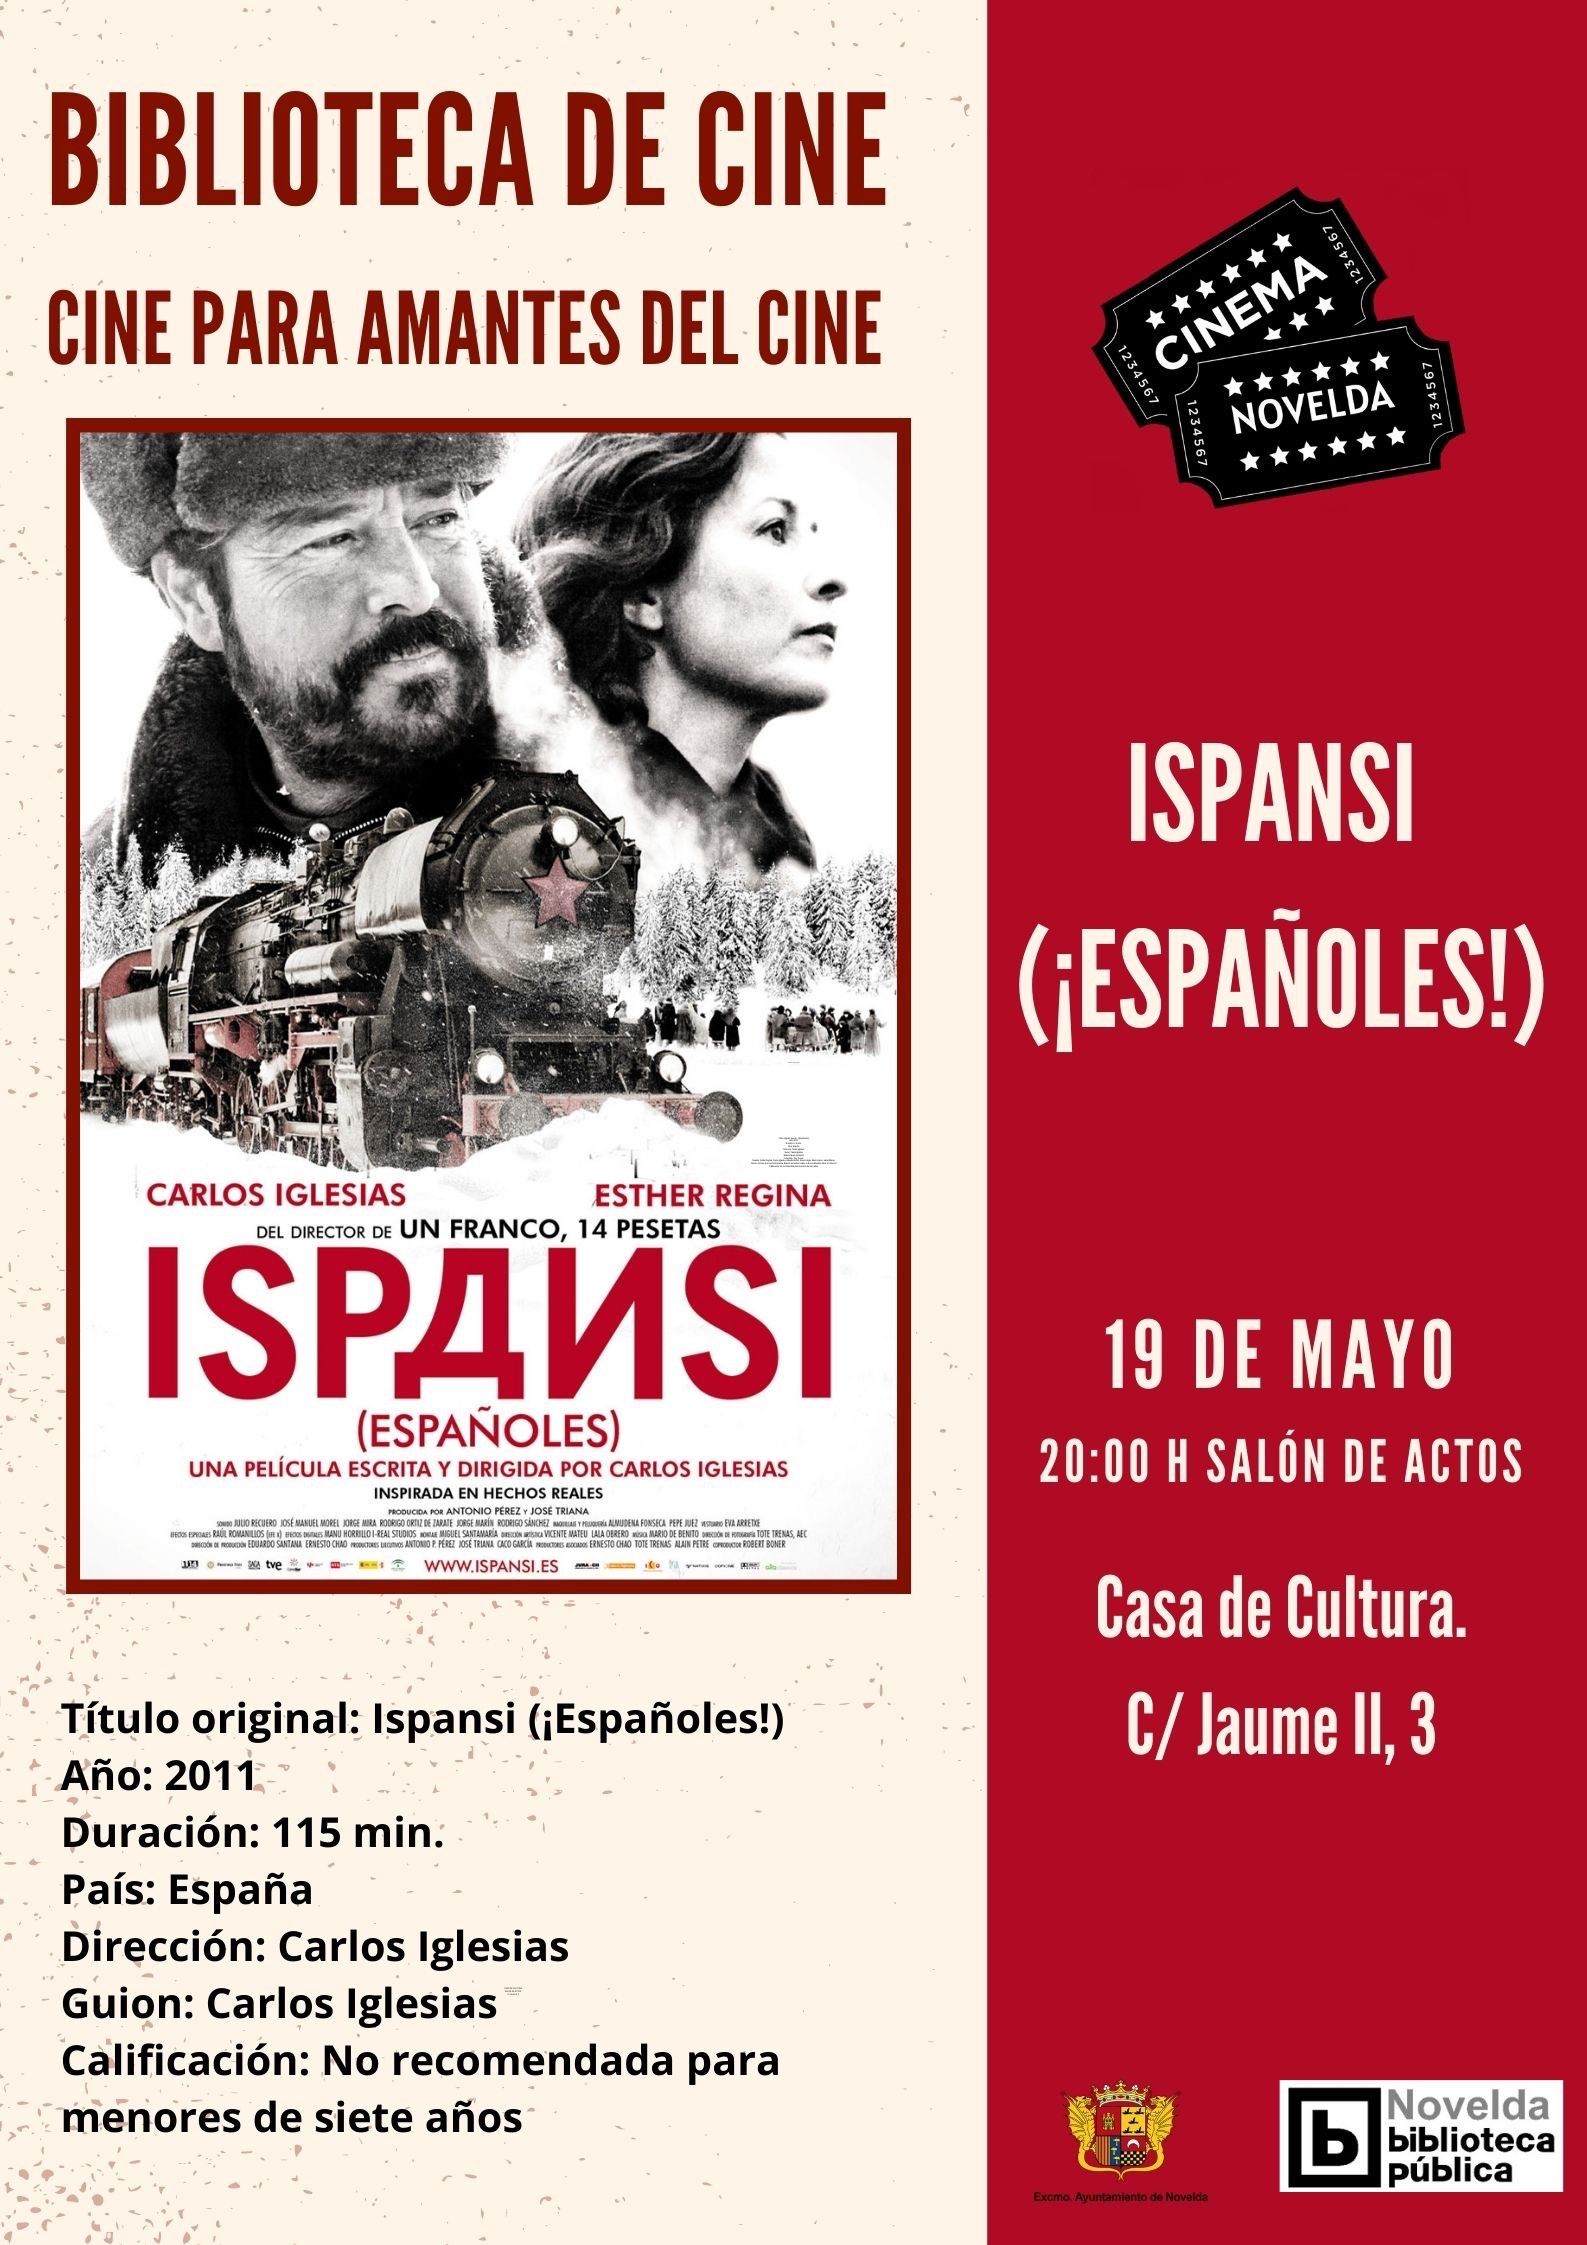 Ayuntamiento de Novelda IMG_7895 Ispansi (¡Españoles!) en Biblioteca de cine 